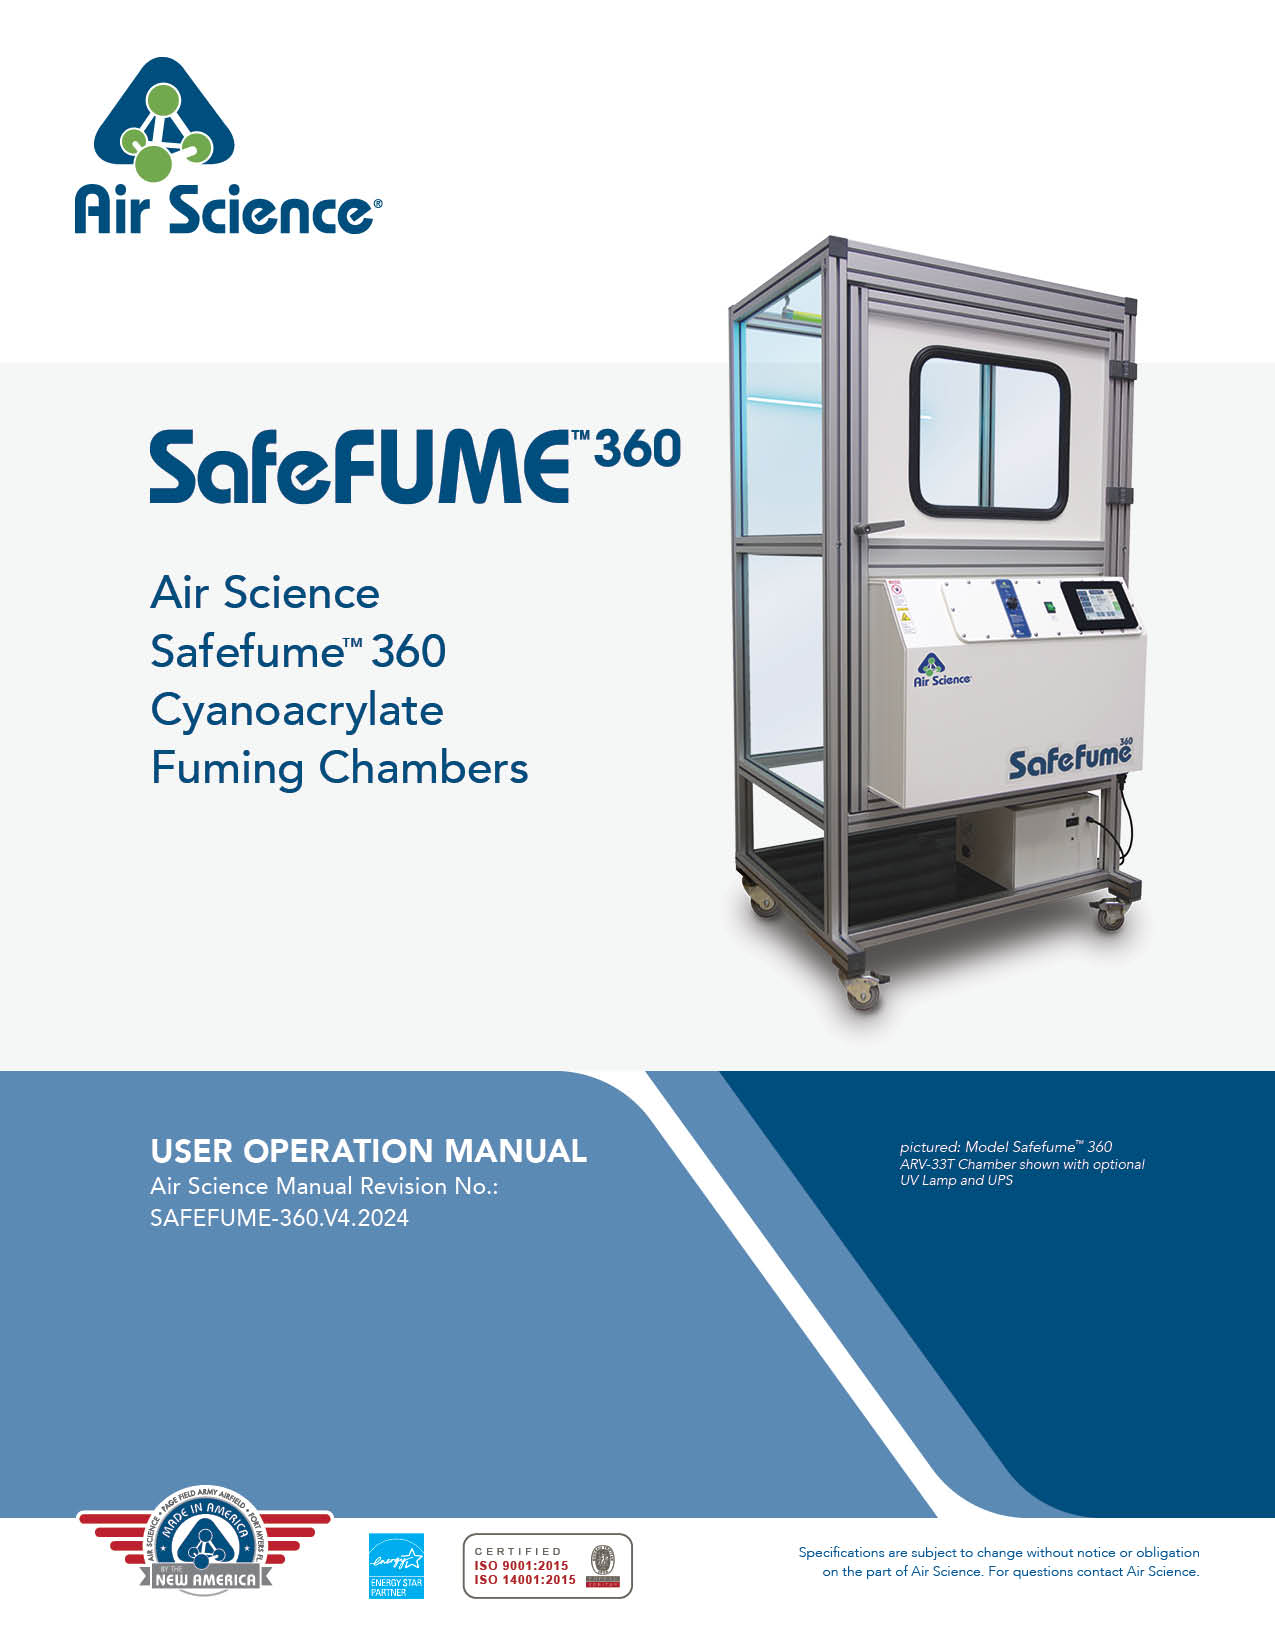 Safefume 360 Cyanoacrylate Fuming Chambers